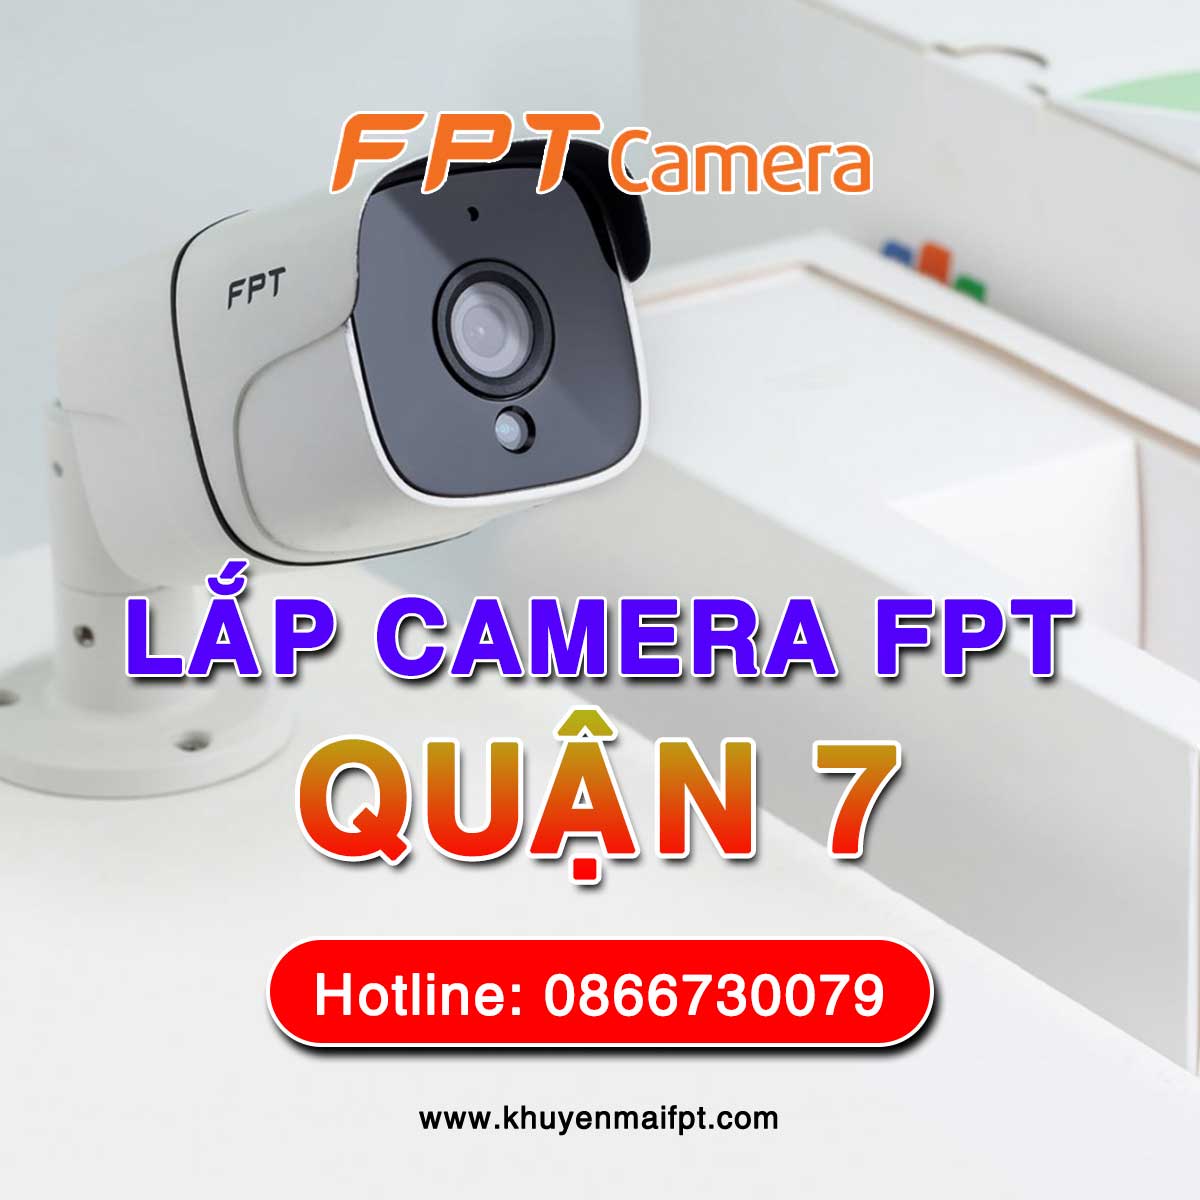 Dịch vụ lắp camera an ninh của FPT Camera tại quận 7, Tp. Hồ Chí Minh